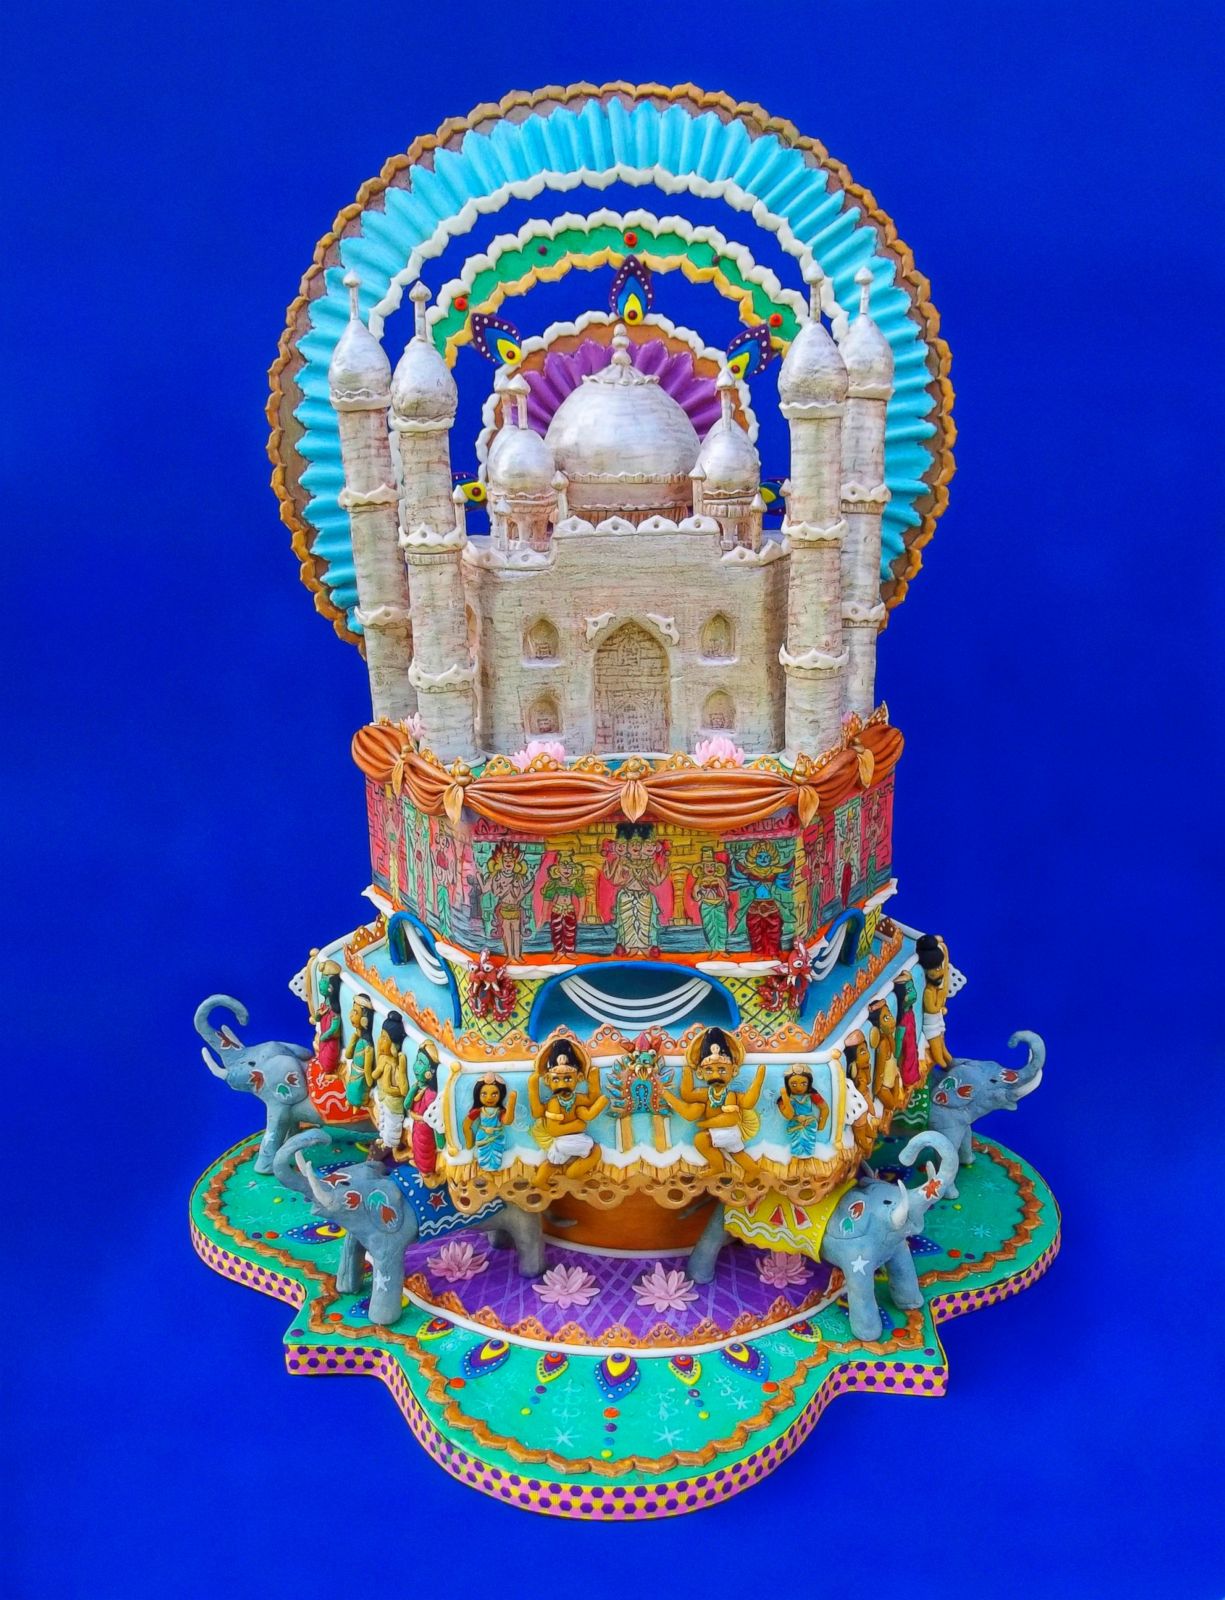 Taj Mahal cake of love recipe by Deeksha Kulshreshtha at BetterButter